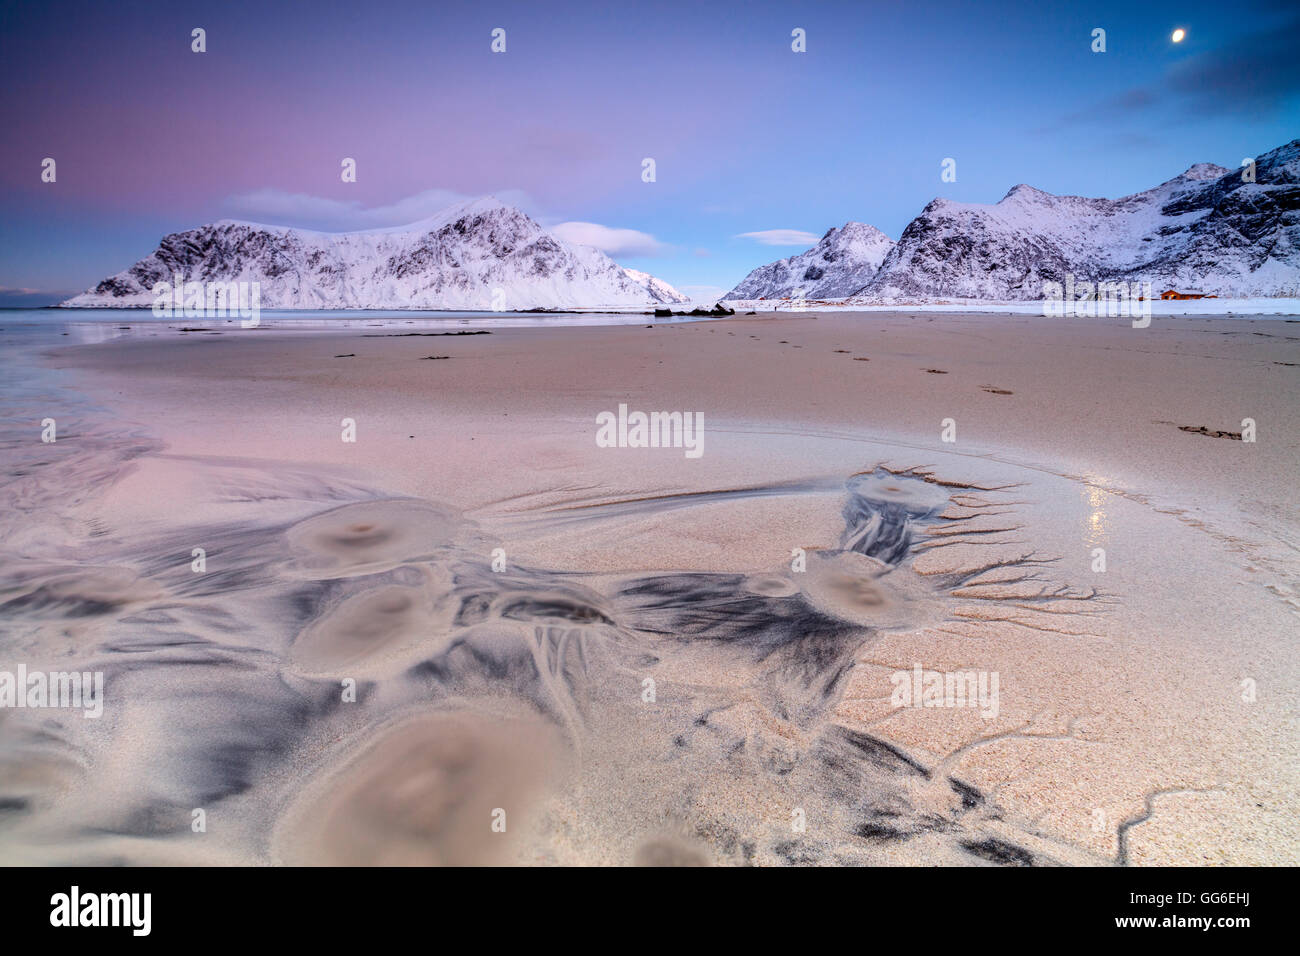 Vollmond spiegelt sich auf Sand in die surreale Landschaft der Skagsanden Strand, Flakstad, Nordland Grafschaft, Lofoten Inseln, Norwegen Stockfoto